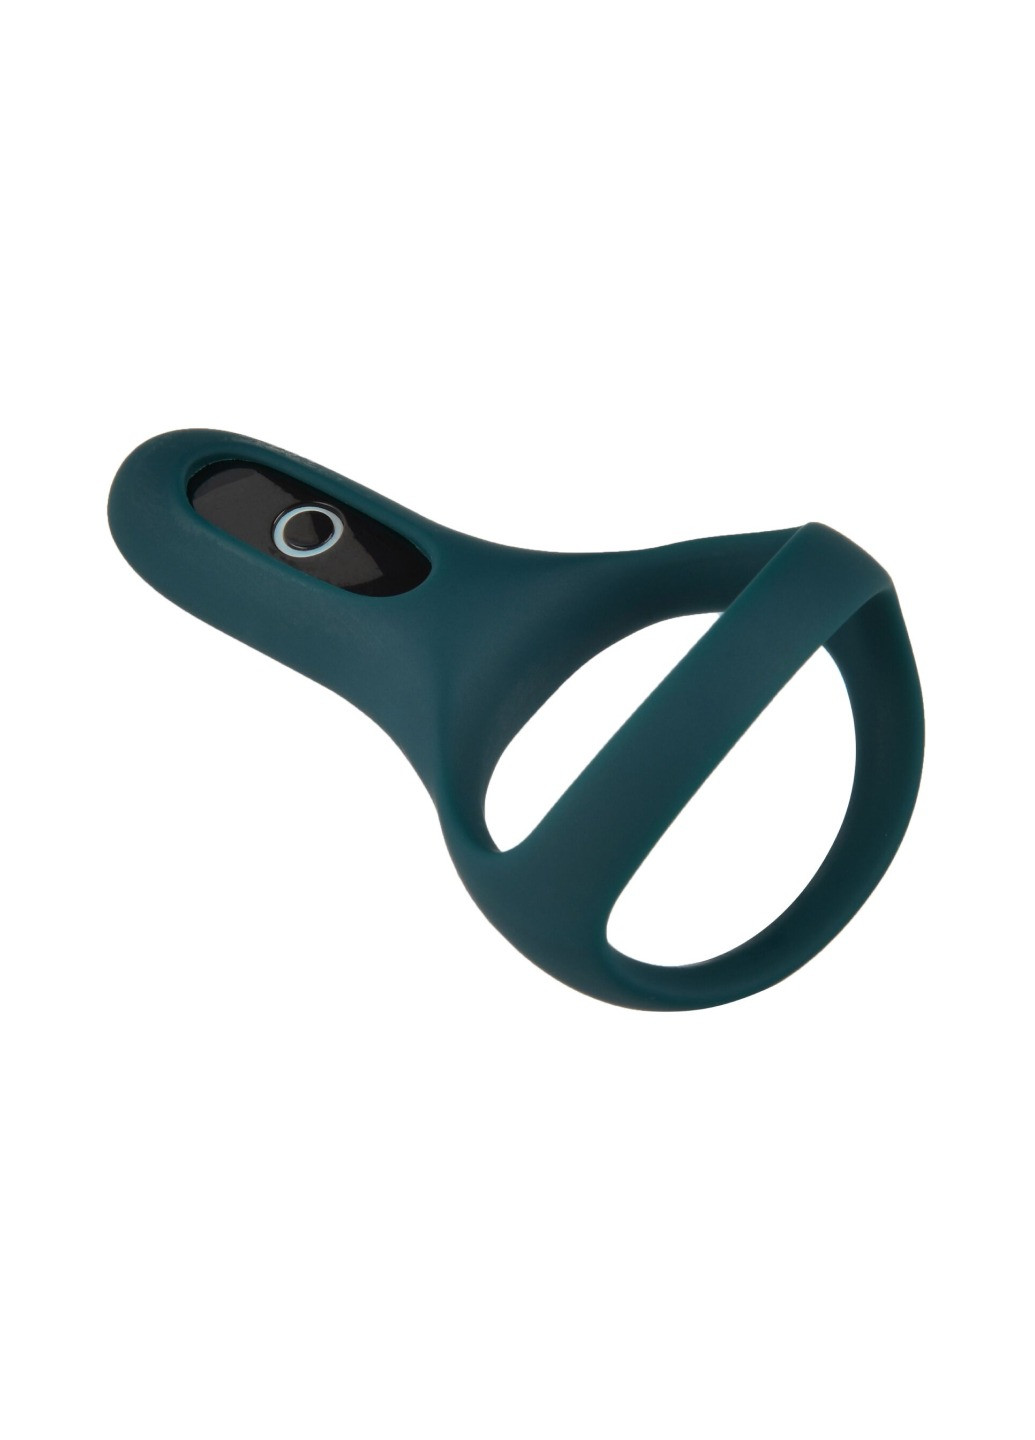 Двойное эрекционное кольцо Rise Turquoise, управление со смартфона Fun Town (276594476)